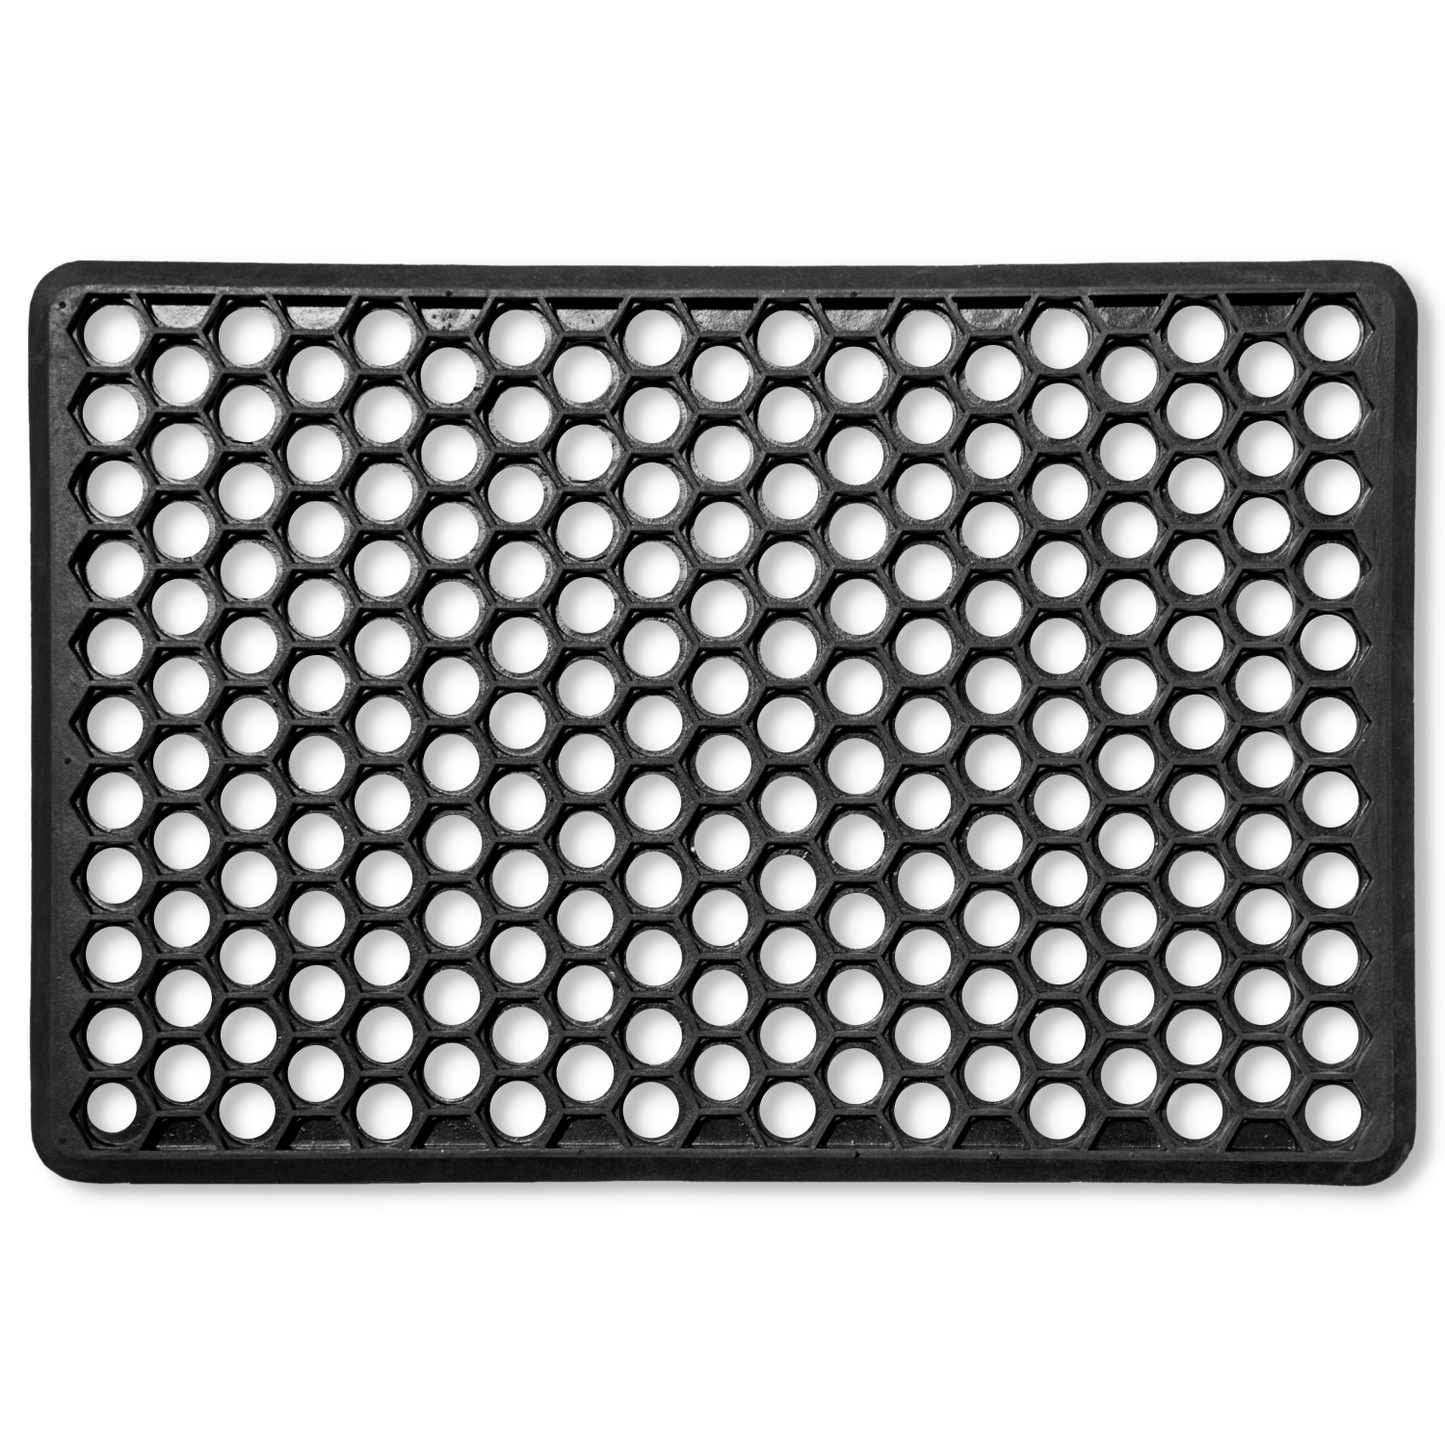 Hexagon Hollow Rubber Door Mats 60 x 40 cm, Black